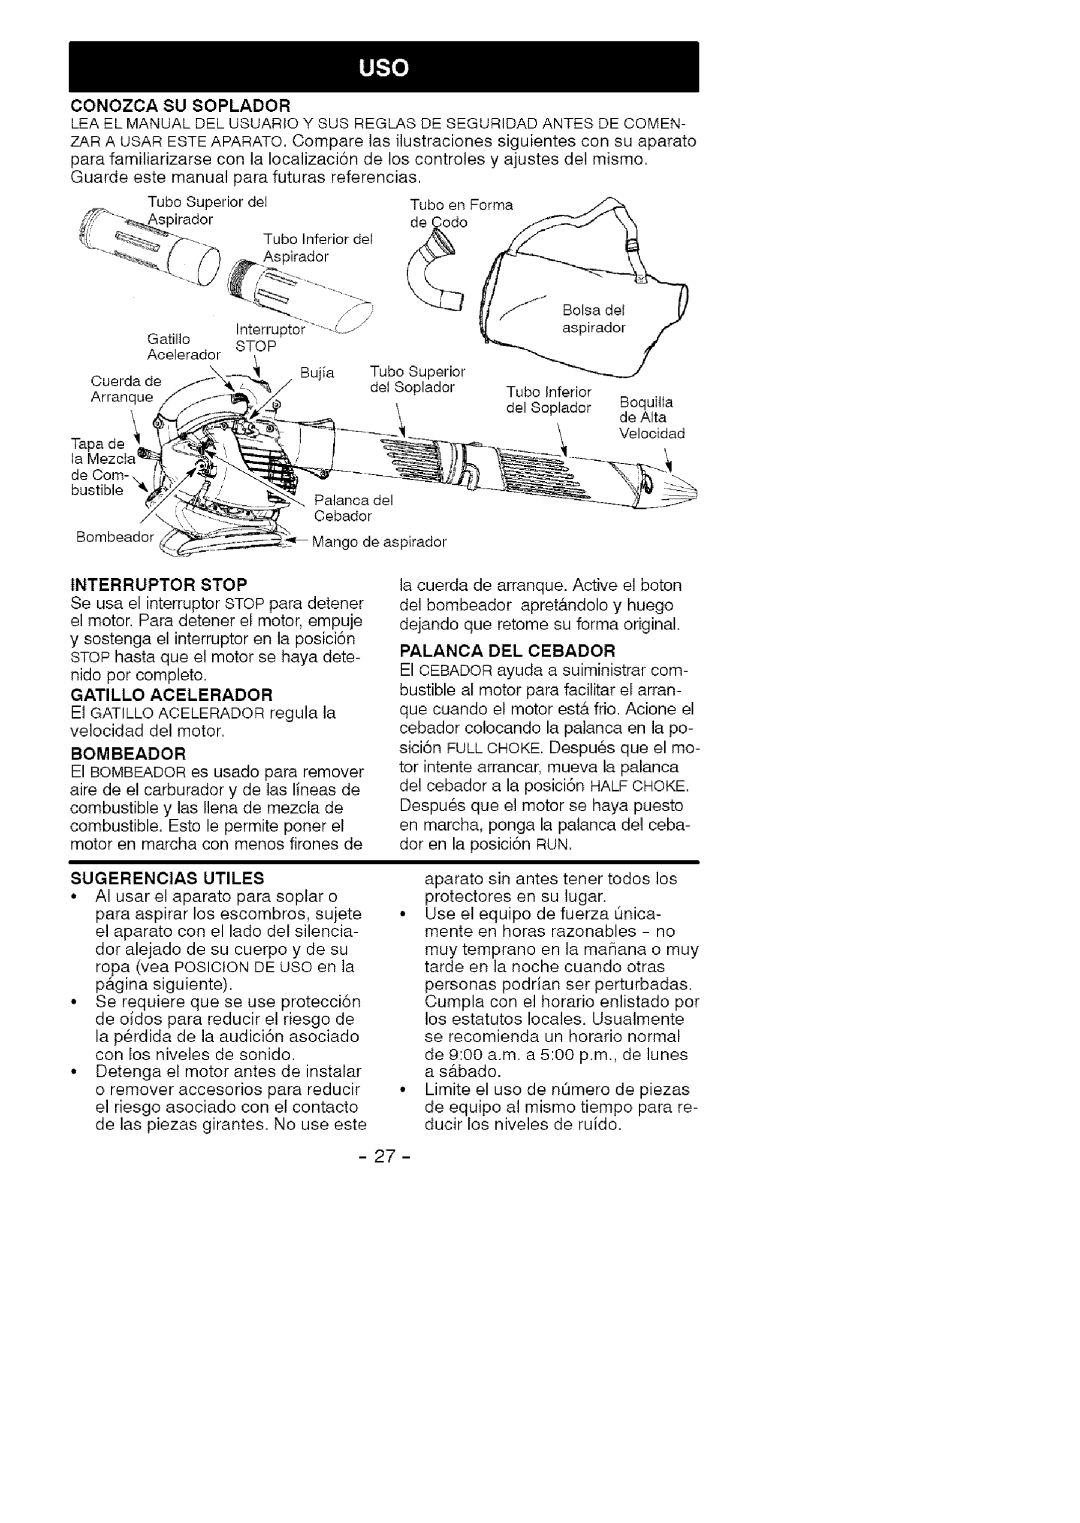 Craftsman 358.79474 manual Sugerencias Utiles, Palanca Del Cebador 